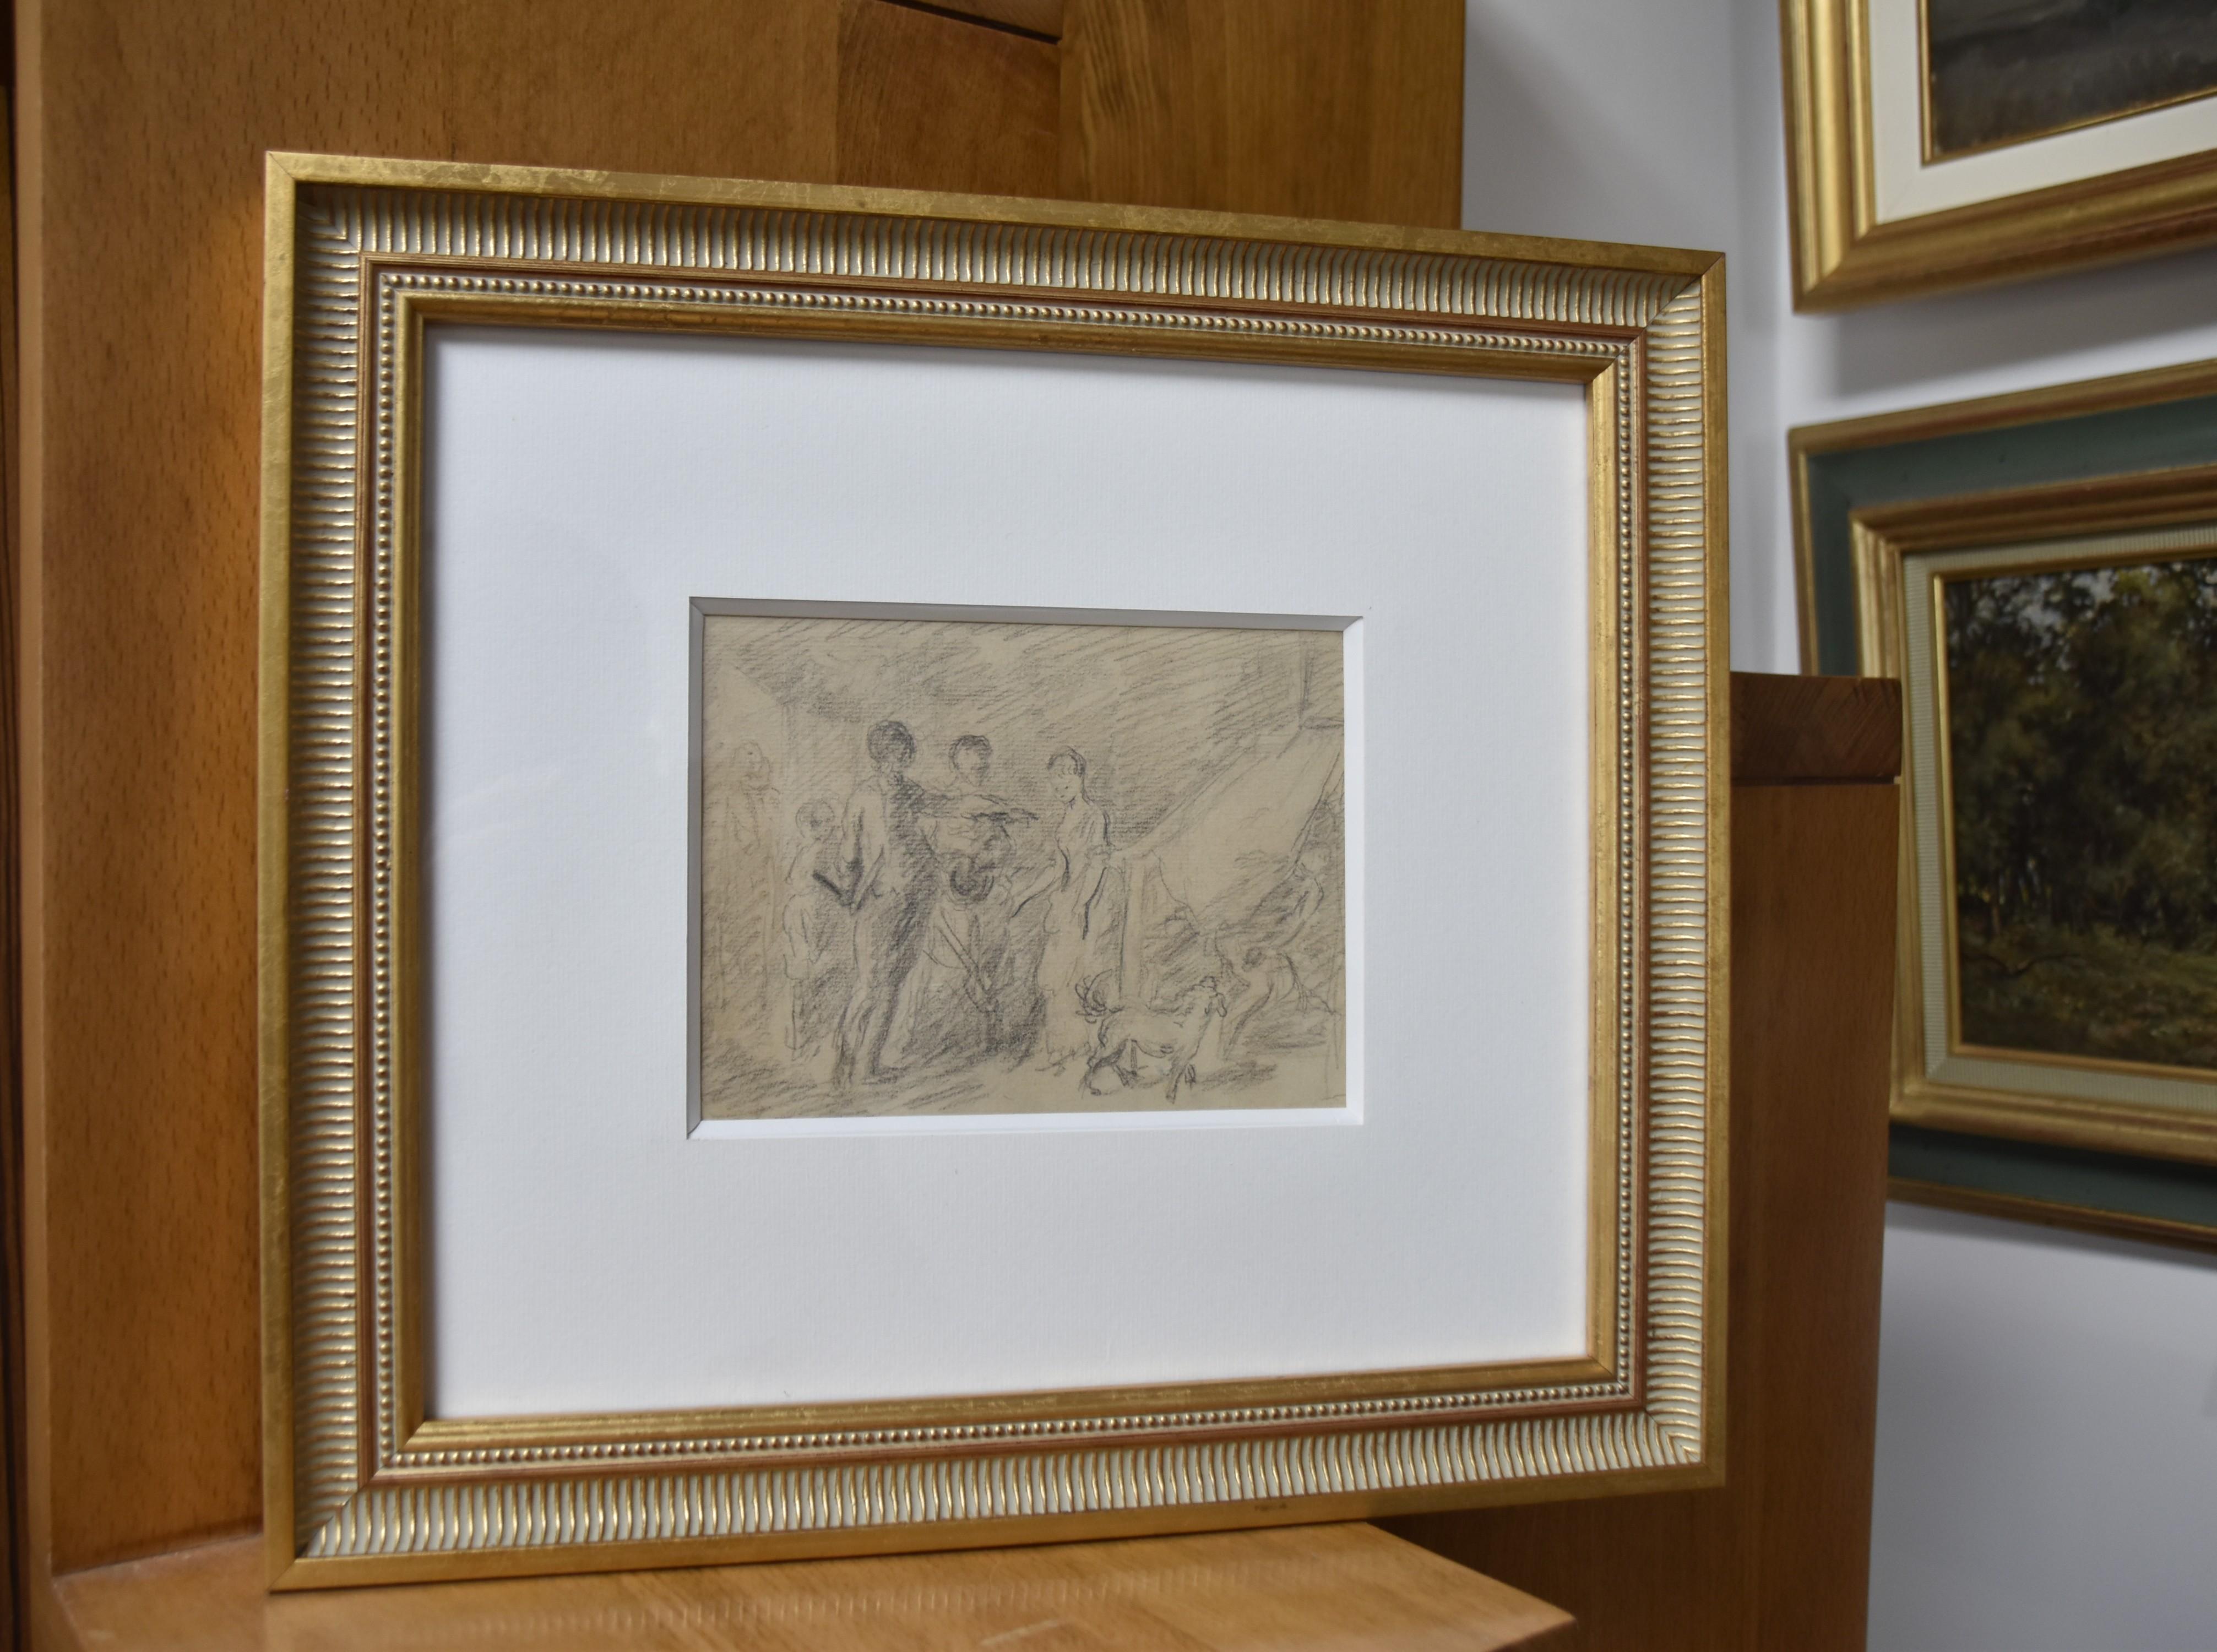 Frankreich um 1770
Zwei Liebende überrascht im Bett
Schwarze Kreide auf Papier
13 x 17 cm
Moderner Rahmen : 34 x 38 cm

Diese Zeichnung war Gabriel de Saint Aubin (1724-1780) zugeschrieben worden.  Aufgrund der Qualität der Zeichnung und des Themas